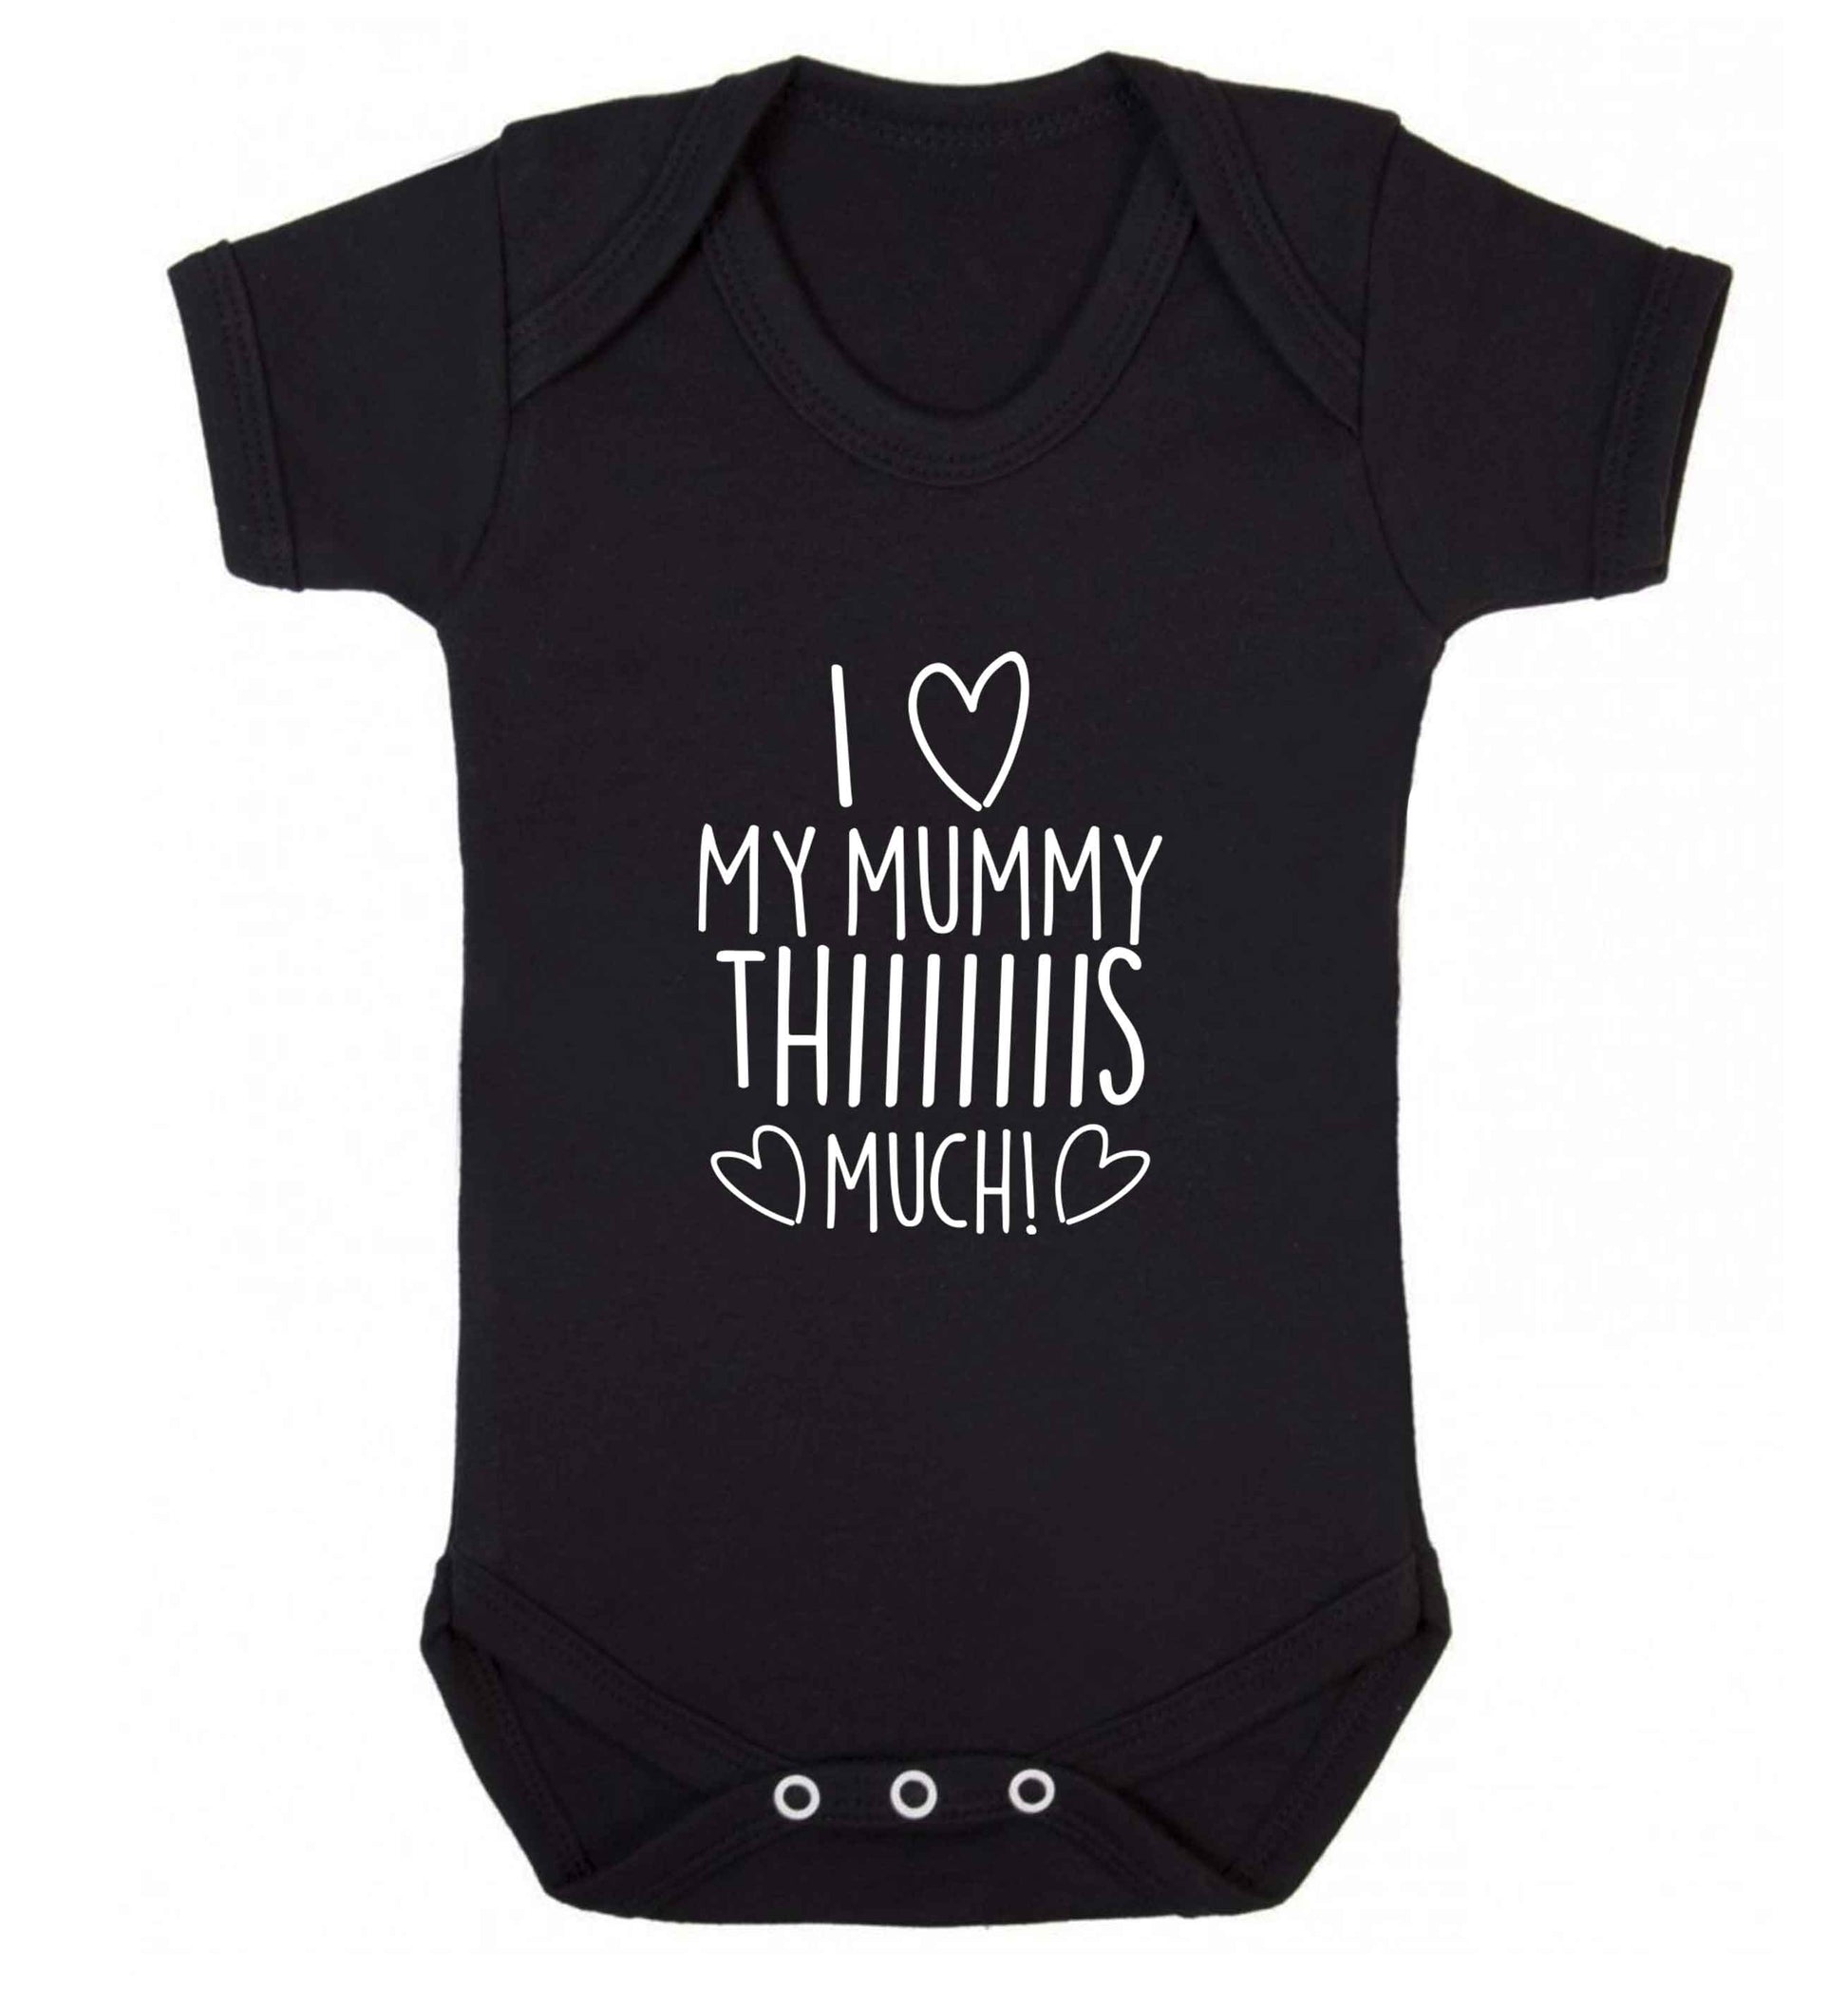 I love my mummy thiiiiis much! baby vest black 18-24 months